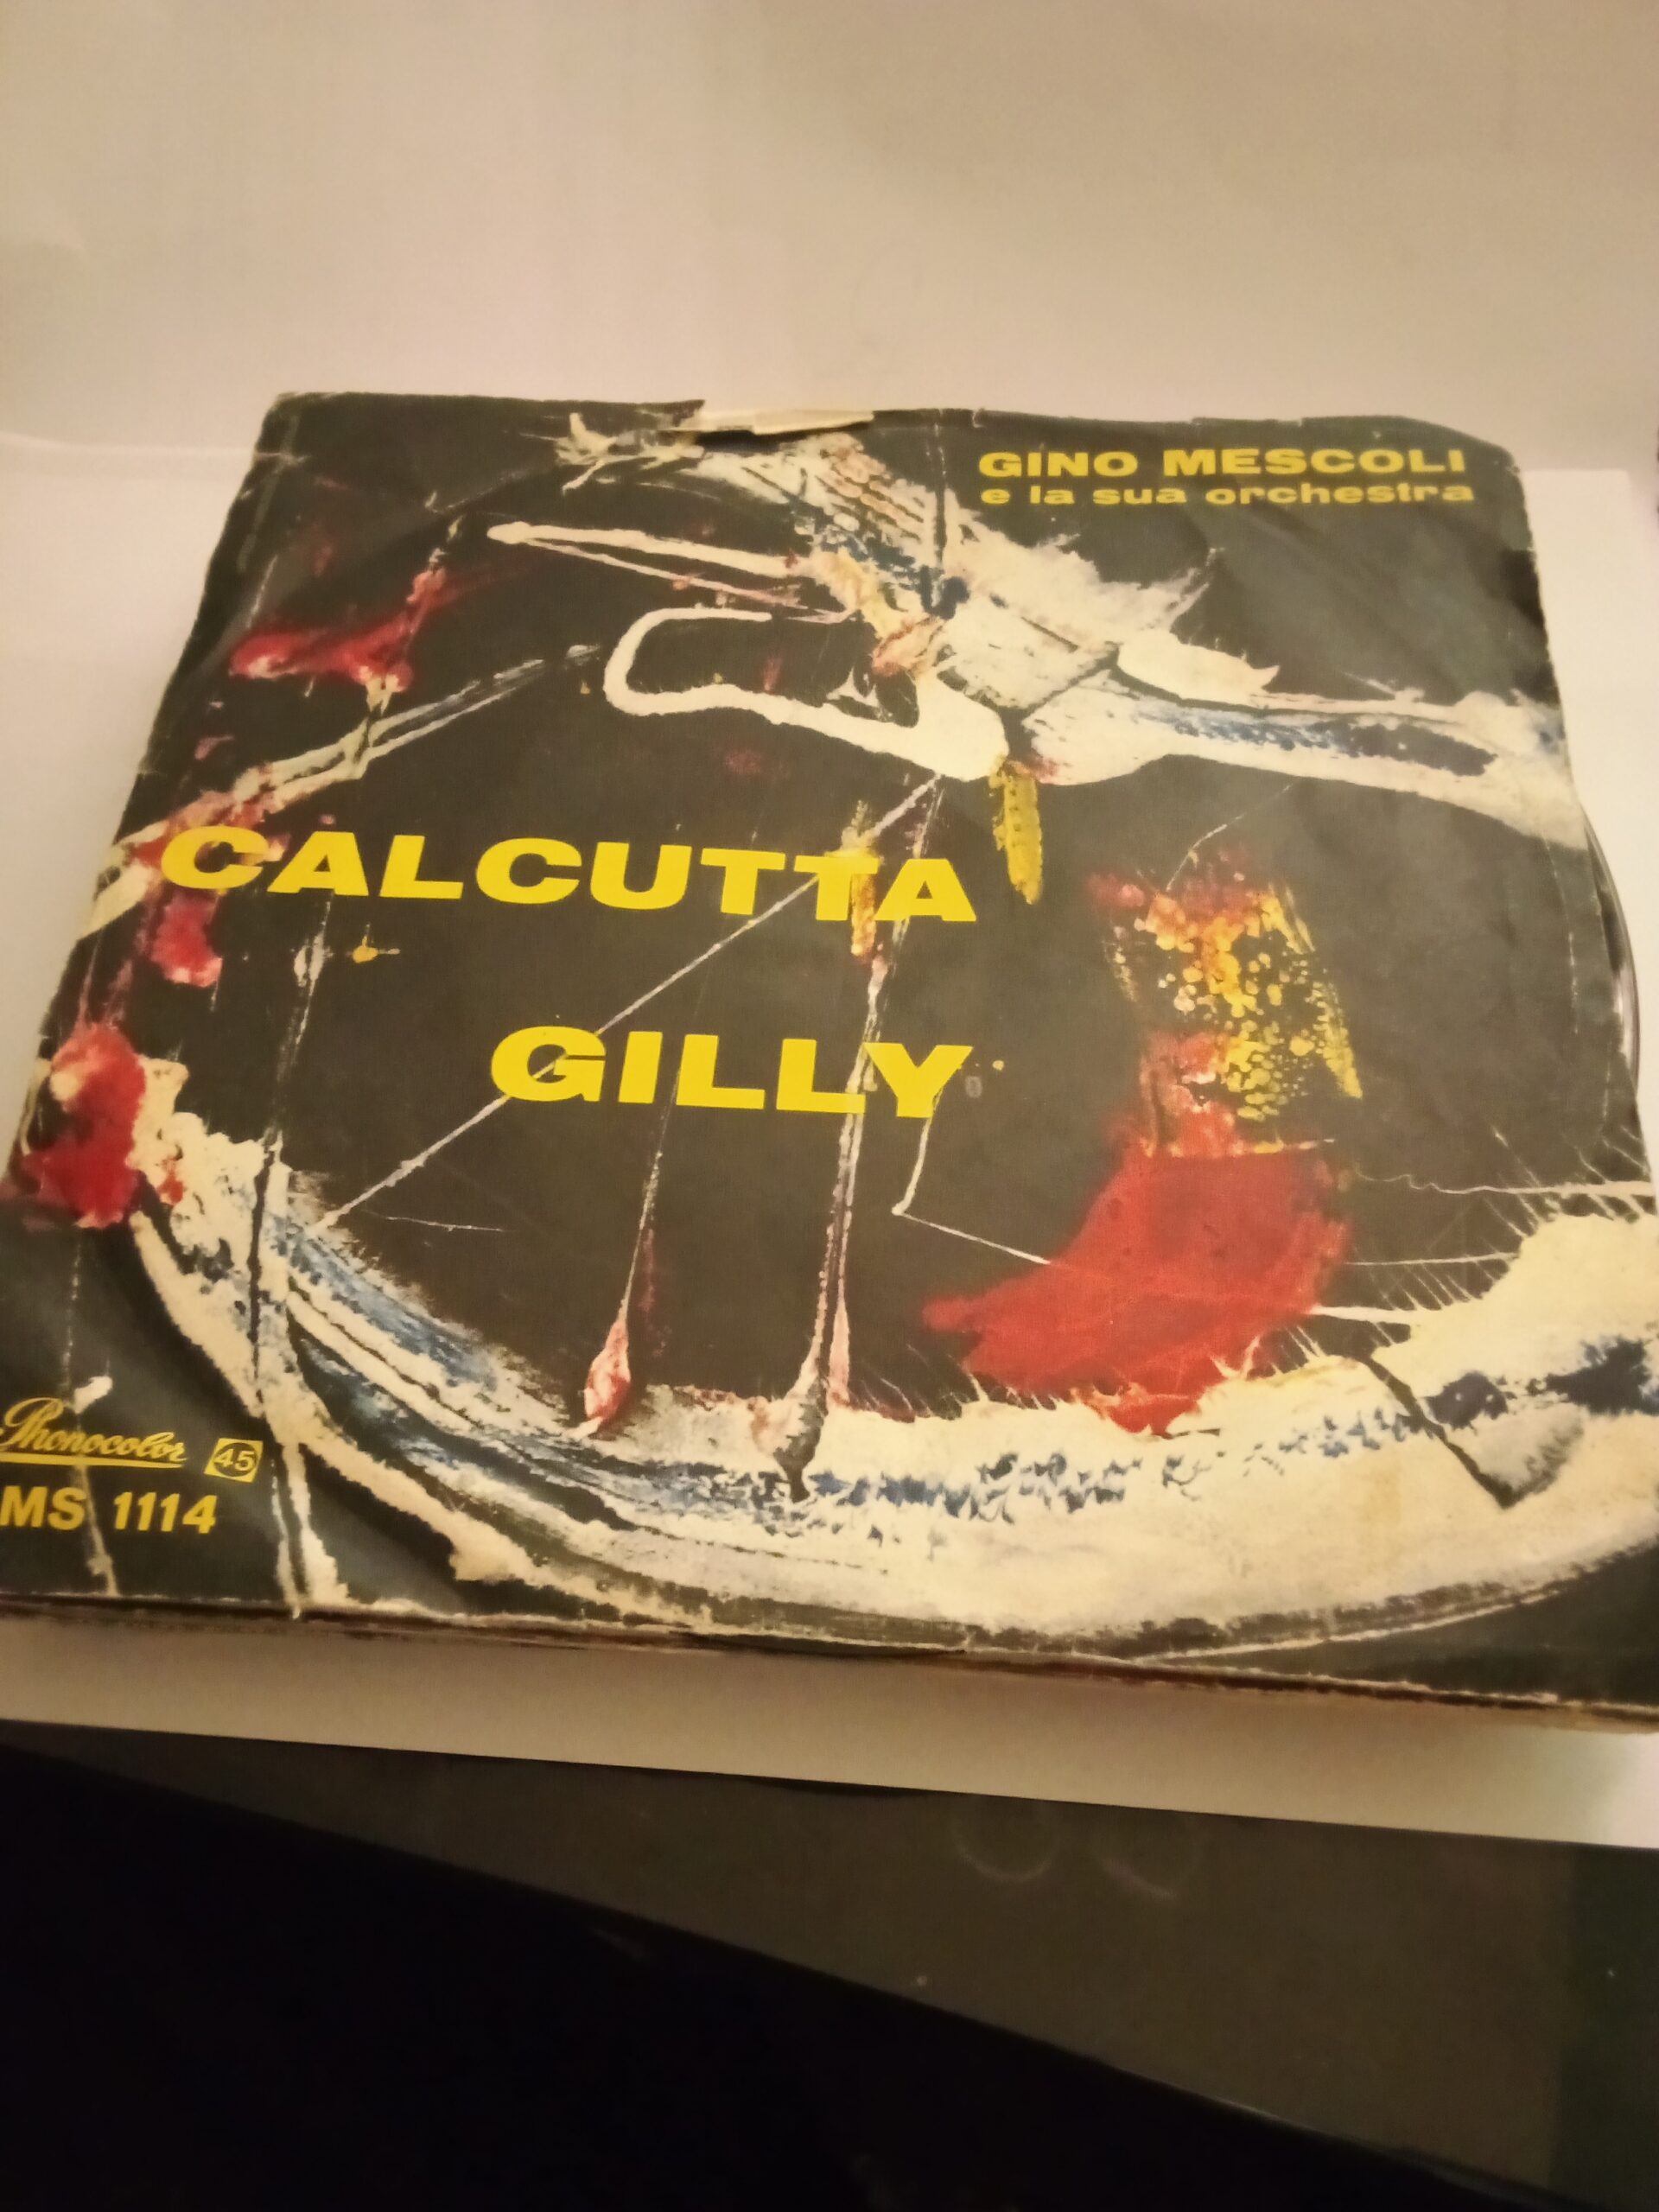 A 66] Disco vinile 45 giri – Gino Mescoli – Calcutta – Gilly – Lo Svuota  Cantine Campobasso Molise